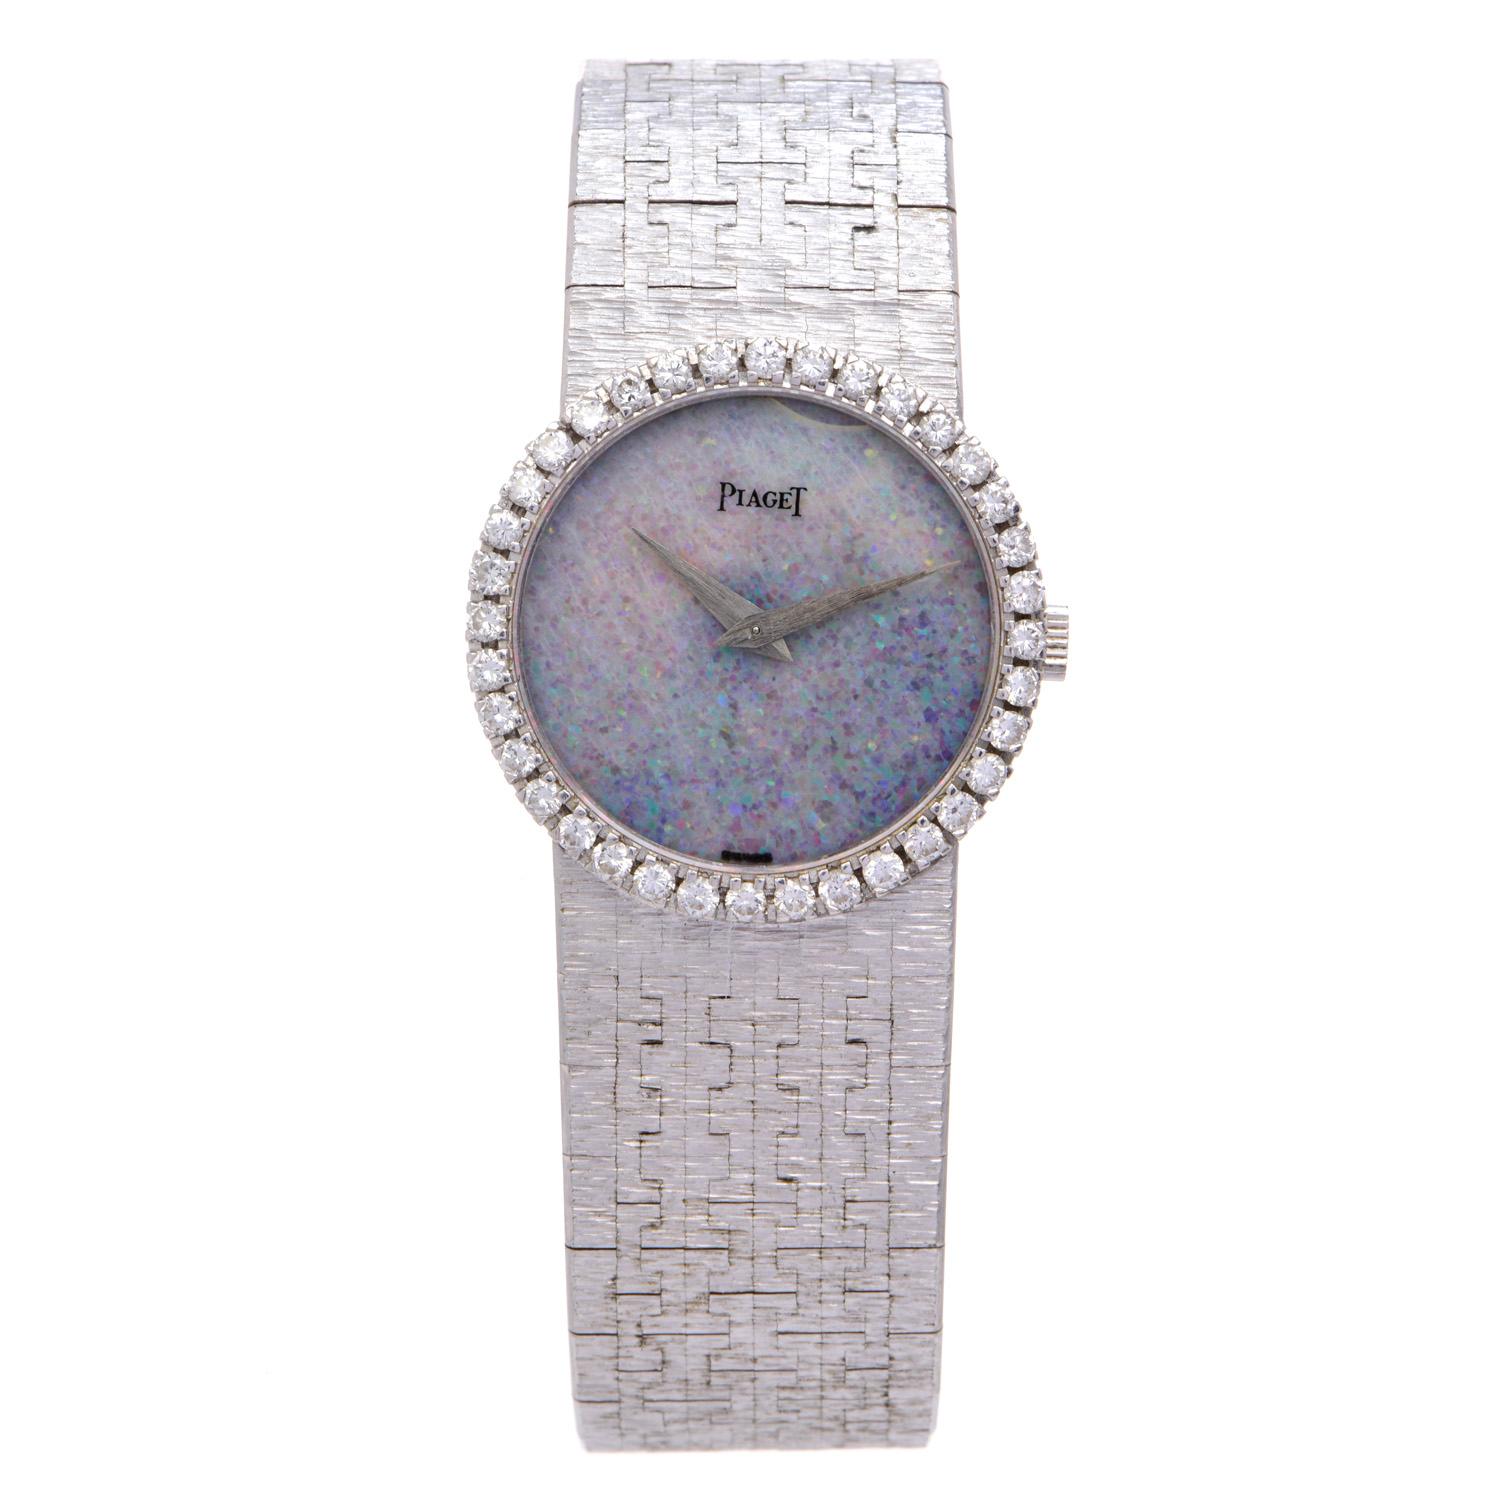 Hochwertige Piaget's seltene Luxury Boutique Vintage Uhr mit Opal-Zifferblatt, 

Ausgestattet mit einer funkelnden Diamantlünette mit (35) Diamanten im Rundschliff mit einem Gewicht von 0,70 Karat, einem exquisiten echten Opal-Zifferblatt und einem